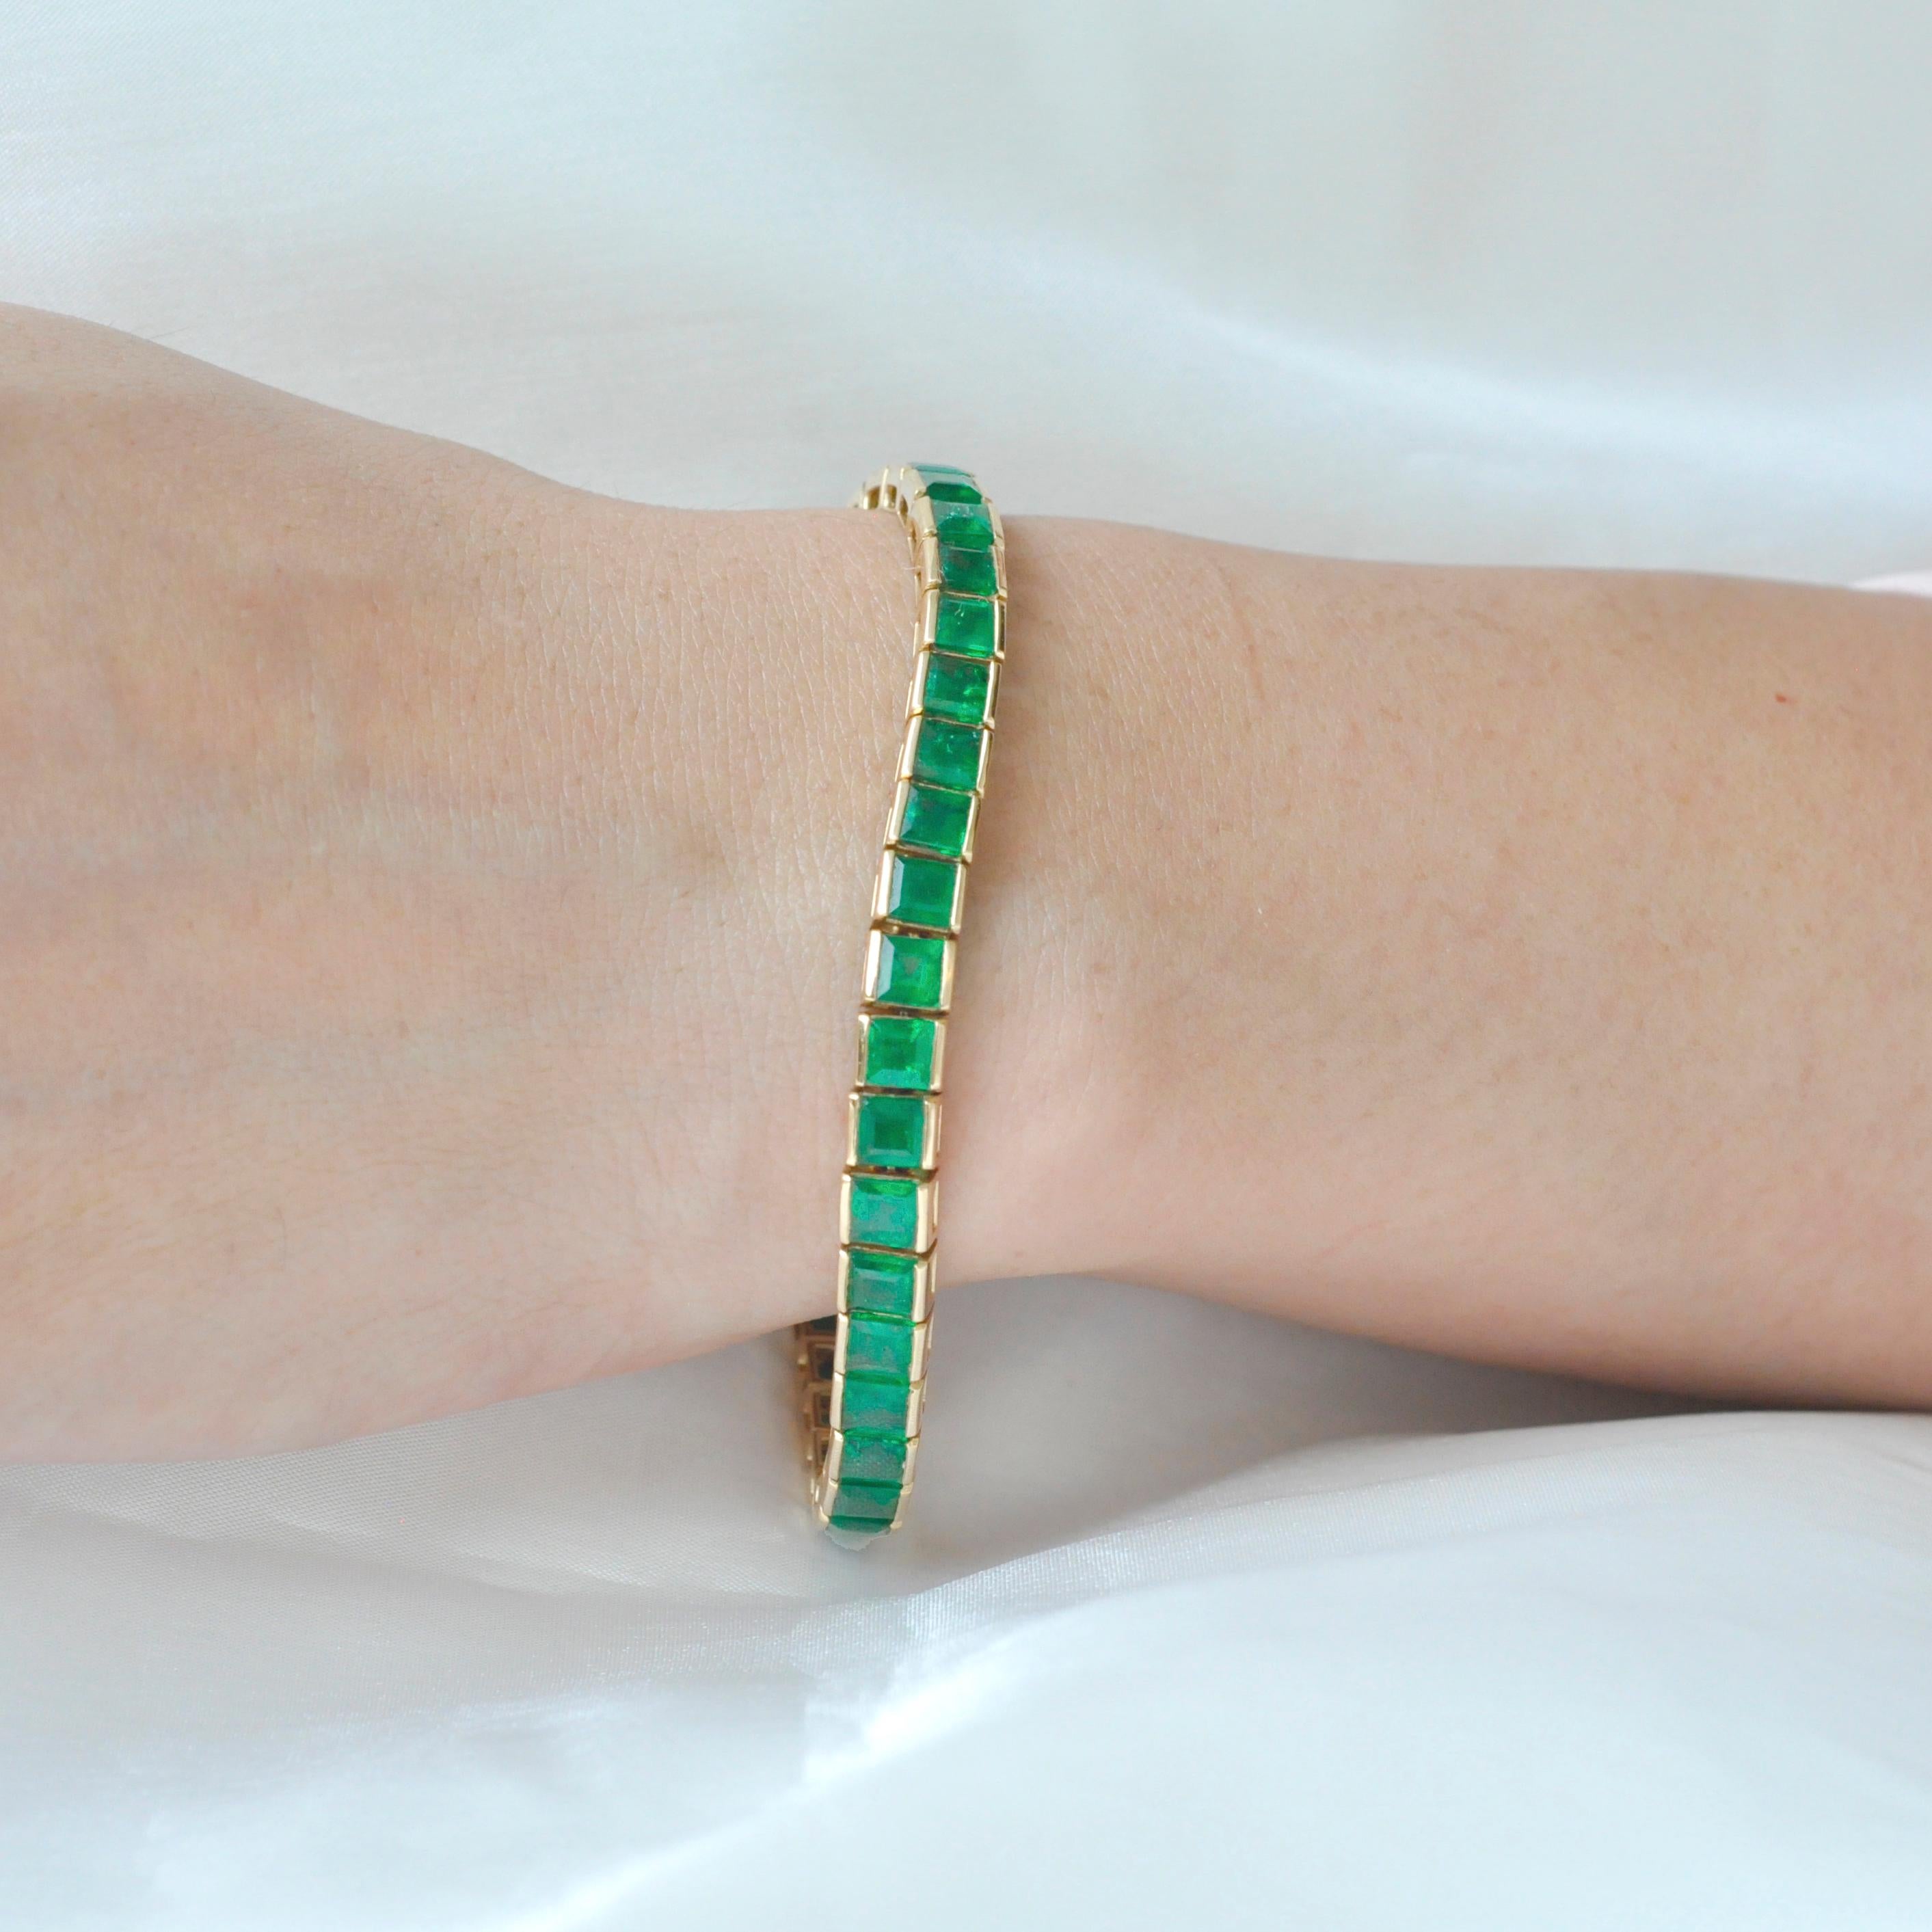 Dies ist ein elegantes brasilianisches Smaragd-Tennisarmband mit 51 quadratischen Smaragden von 12,40 Karat in einer schönen Kanalfassung. Brasilianische Smaragde sind international für ihre prächtige, leuchtend grüne Farbe bekannt. Dieses Armband